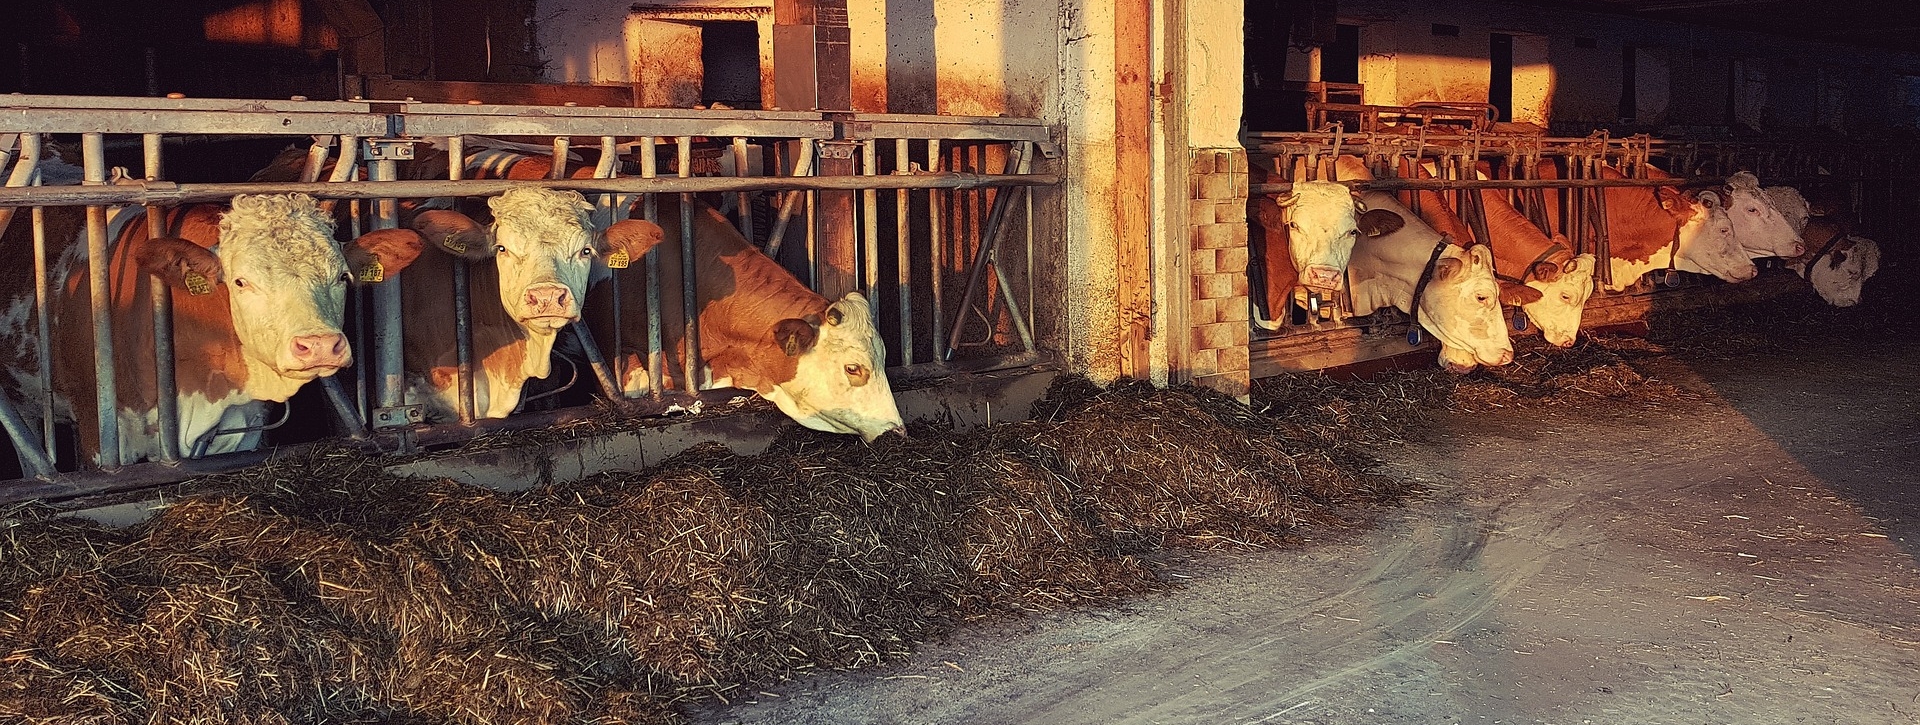 Das Bild zeigt Kühe im Stall beim fressen